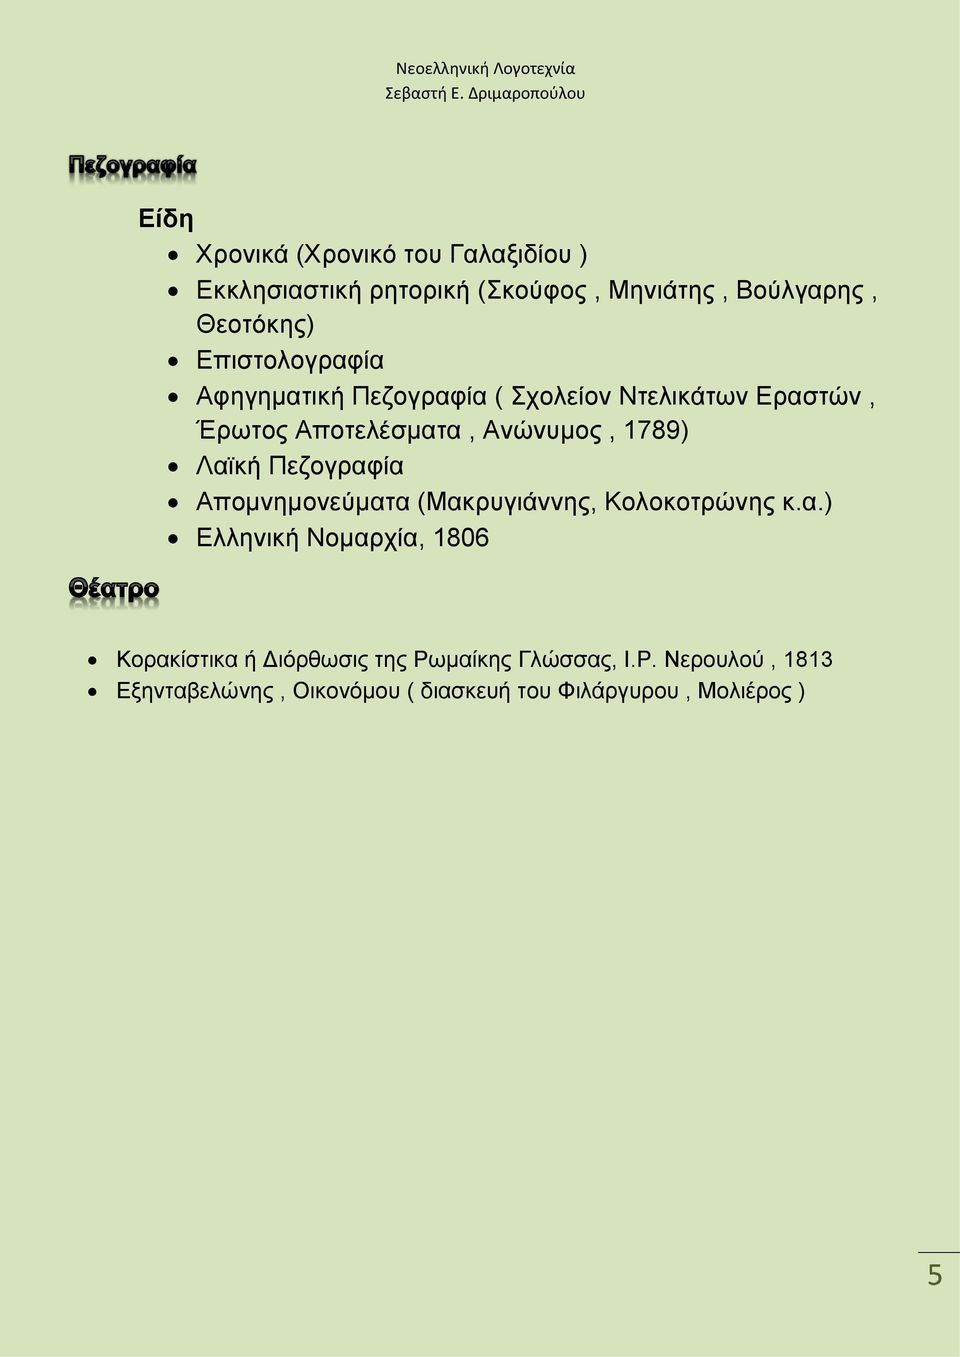 Λαϊκή Πεζογραφία Απομνημονεύματα (Μακρυγιάννης, Κολοκοτρώνης κ.α.) Ελληνική Νομαρχία, 1806 Κορακίστικα ή Διόρθωσις της Ρωμαίκης Γλώσσας, Ι.